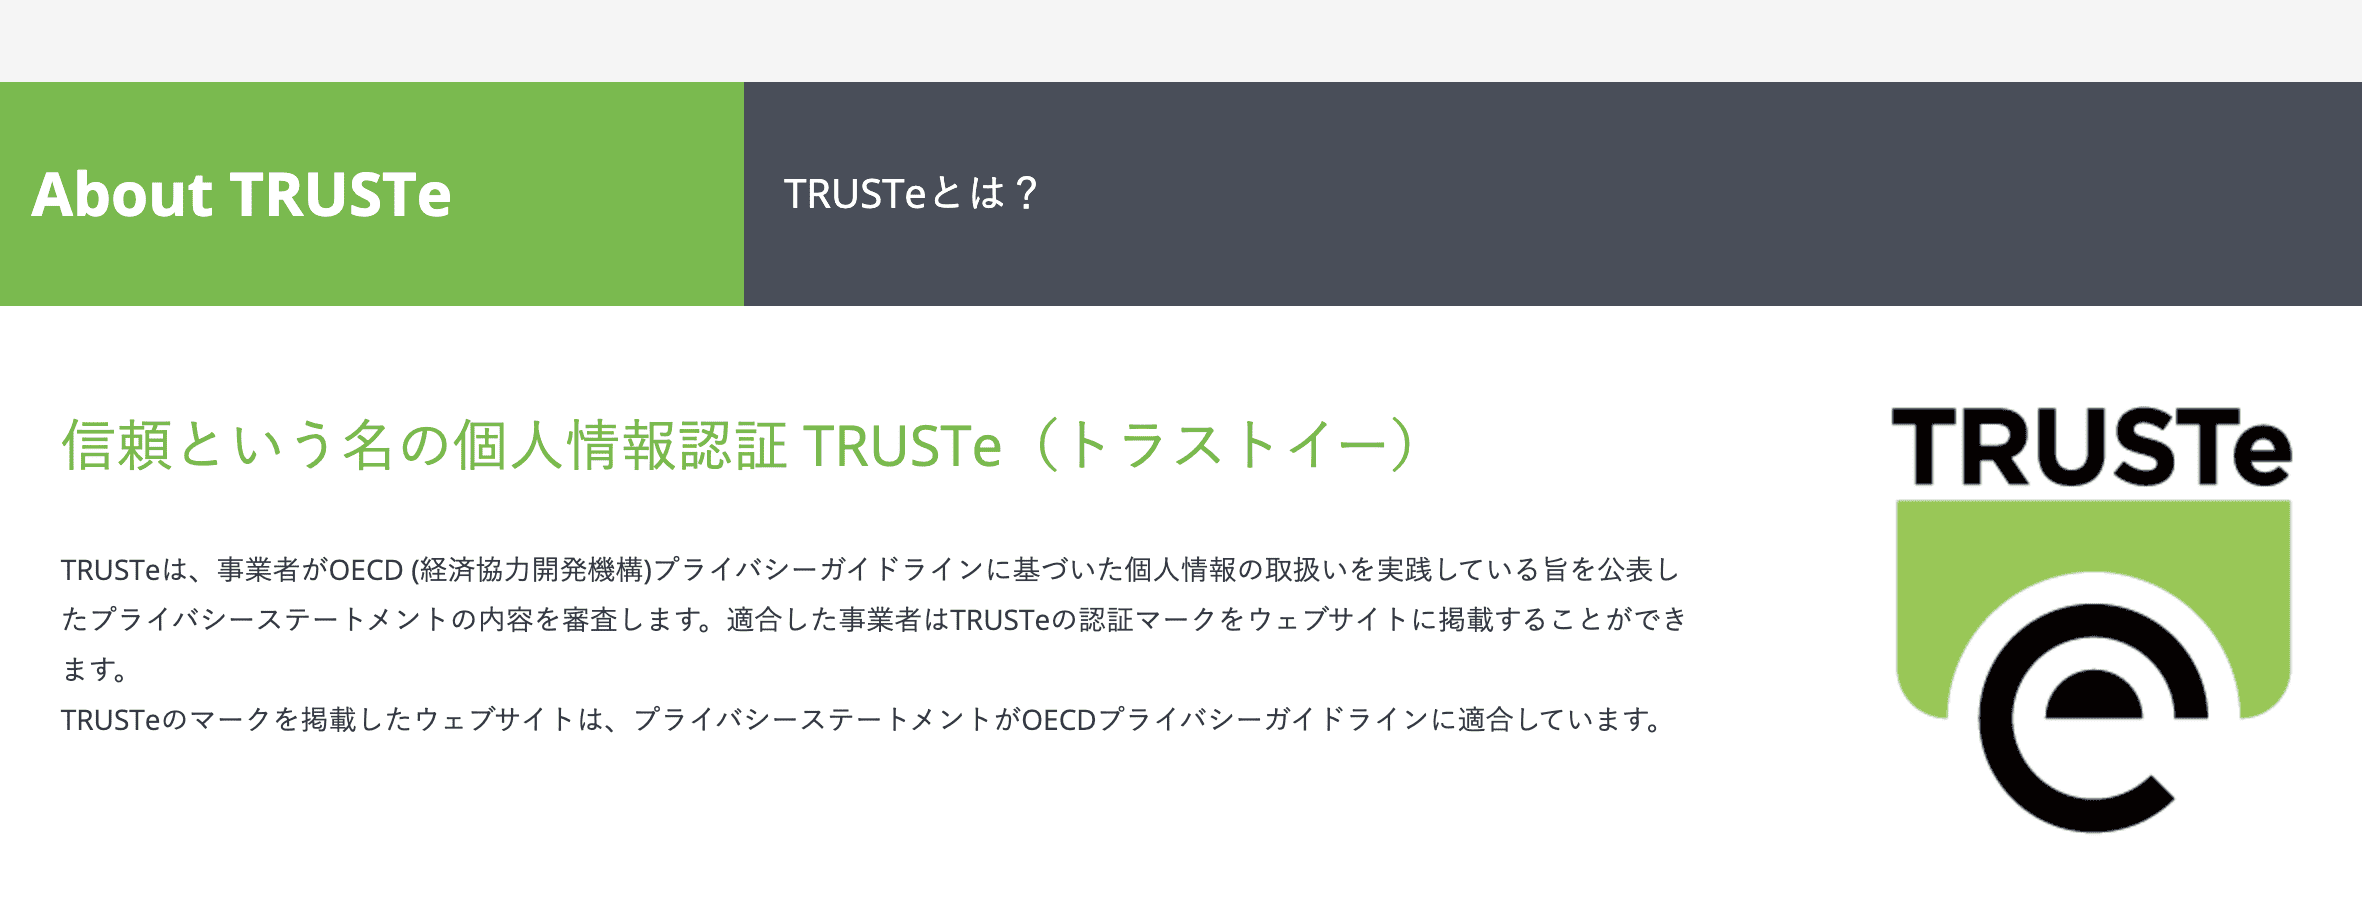 TRUSTe